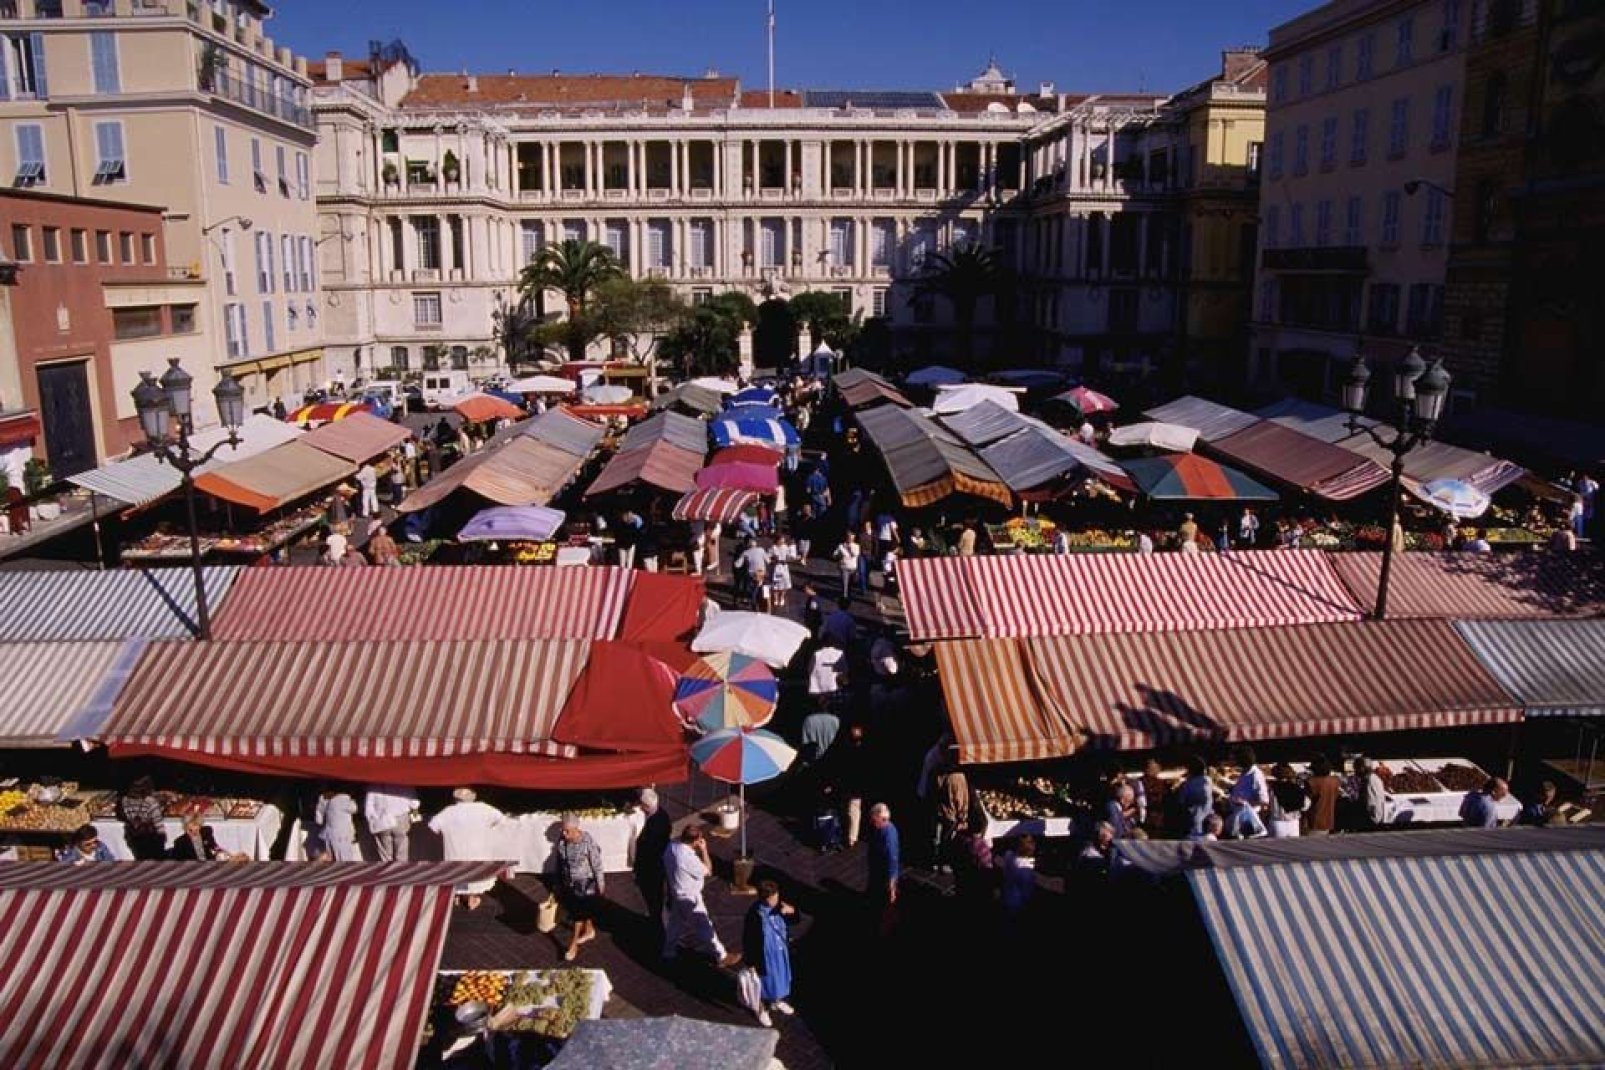 Luoghi di incontri e scambi, i mercati di Nizza sono una tradizione profondamente radicata e rinomata grazie alla qualità dei prodotti freschi proposti.